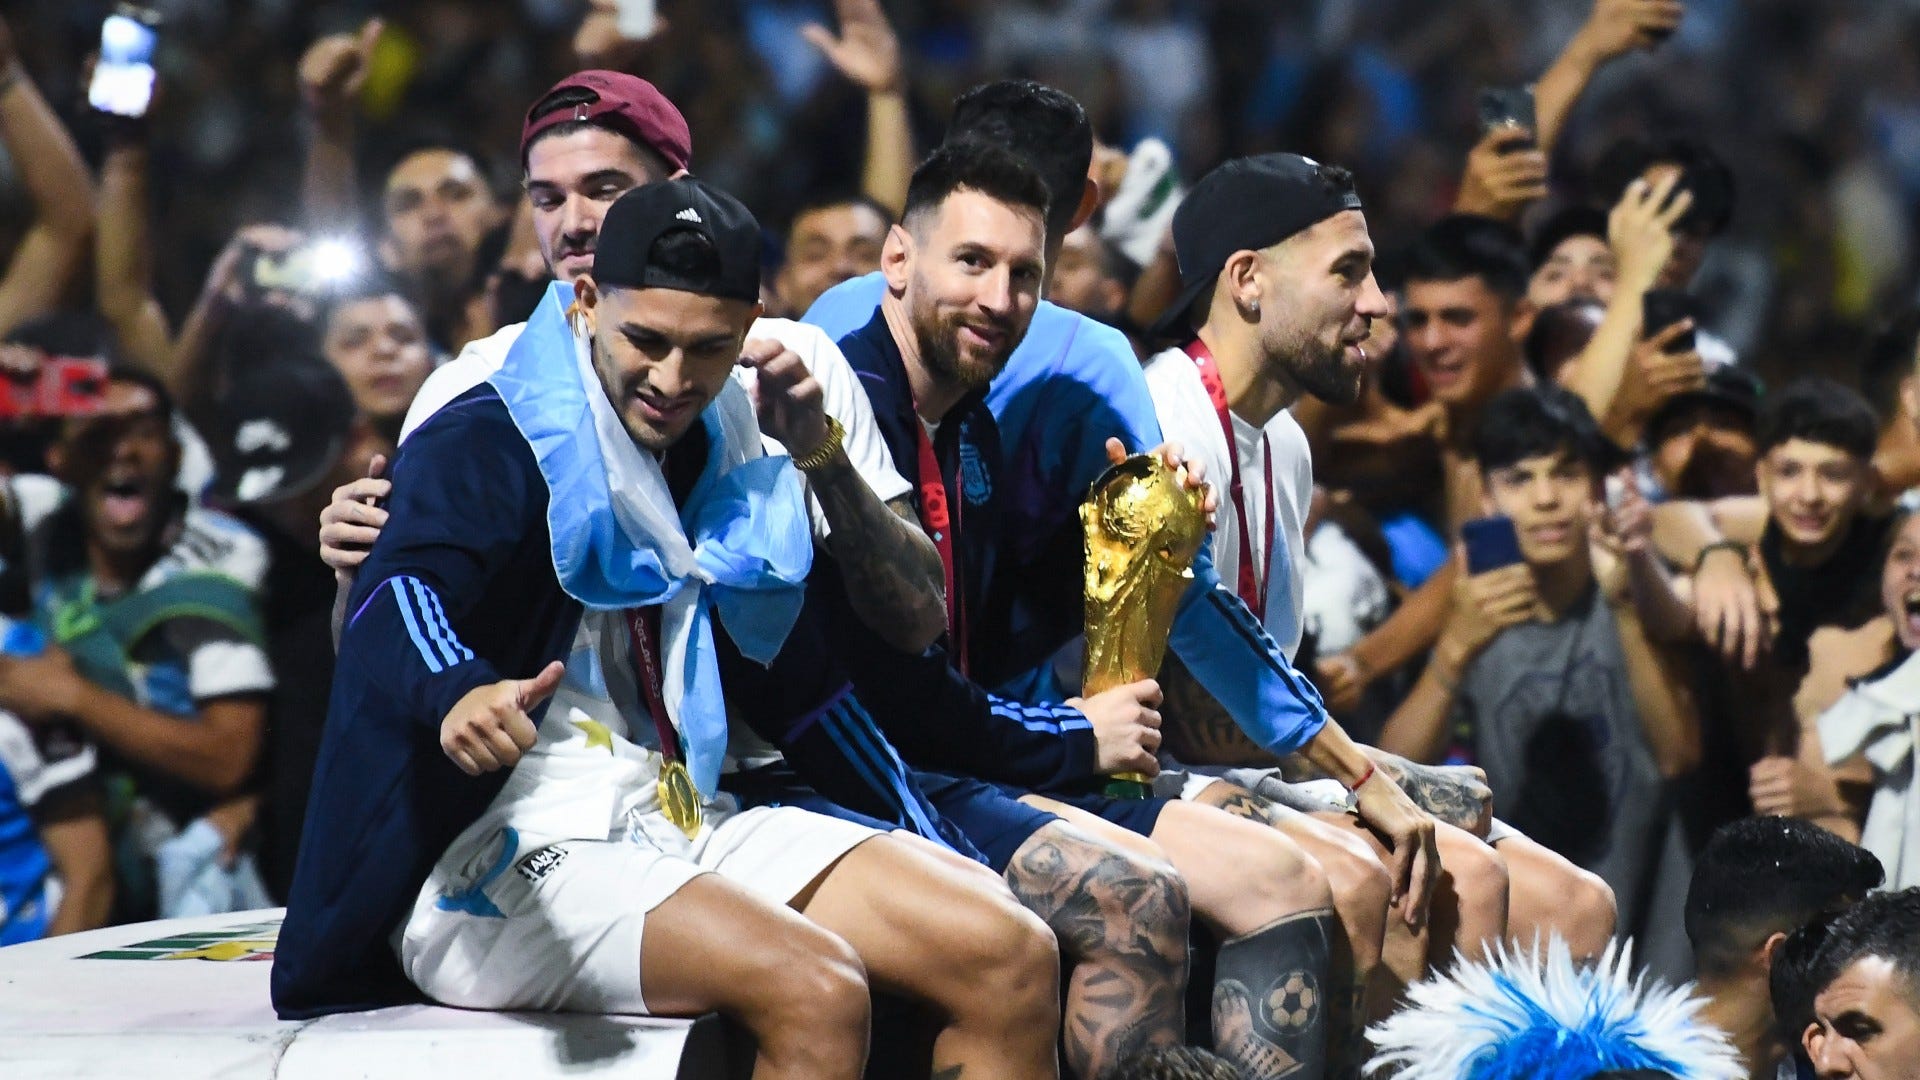 Casi accidente en autobús de Argentina: Messi y sus compañeros corren el riesgo de chocar contra el tendido eléctrico